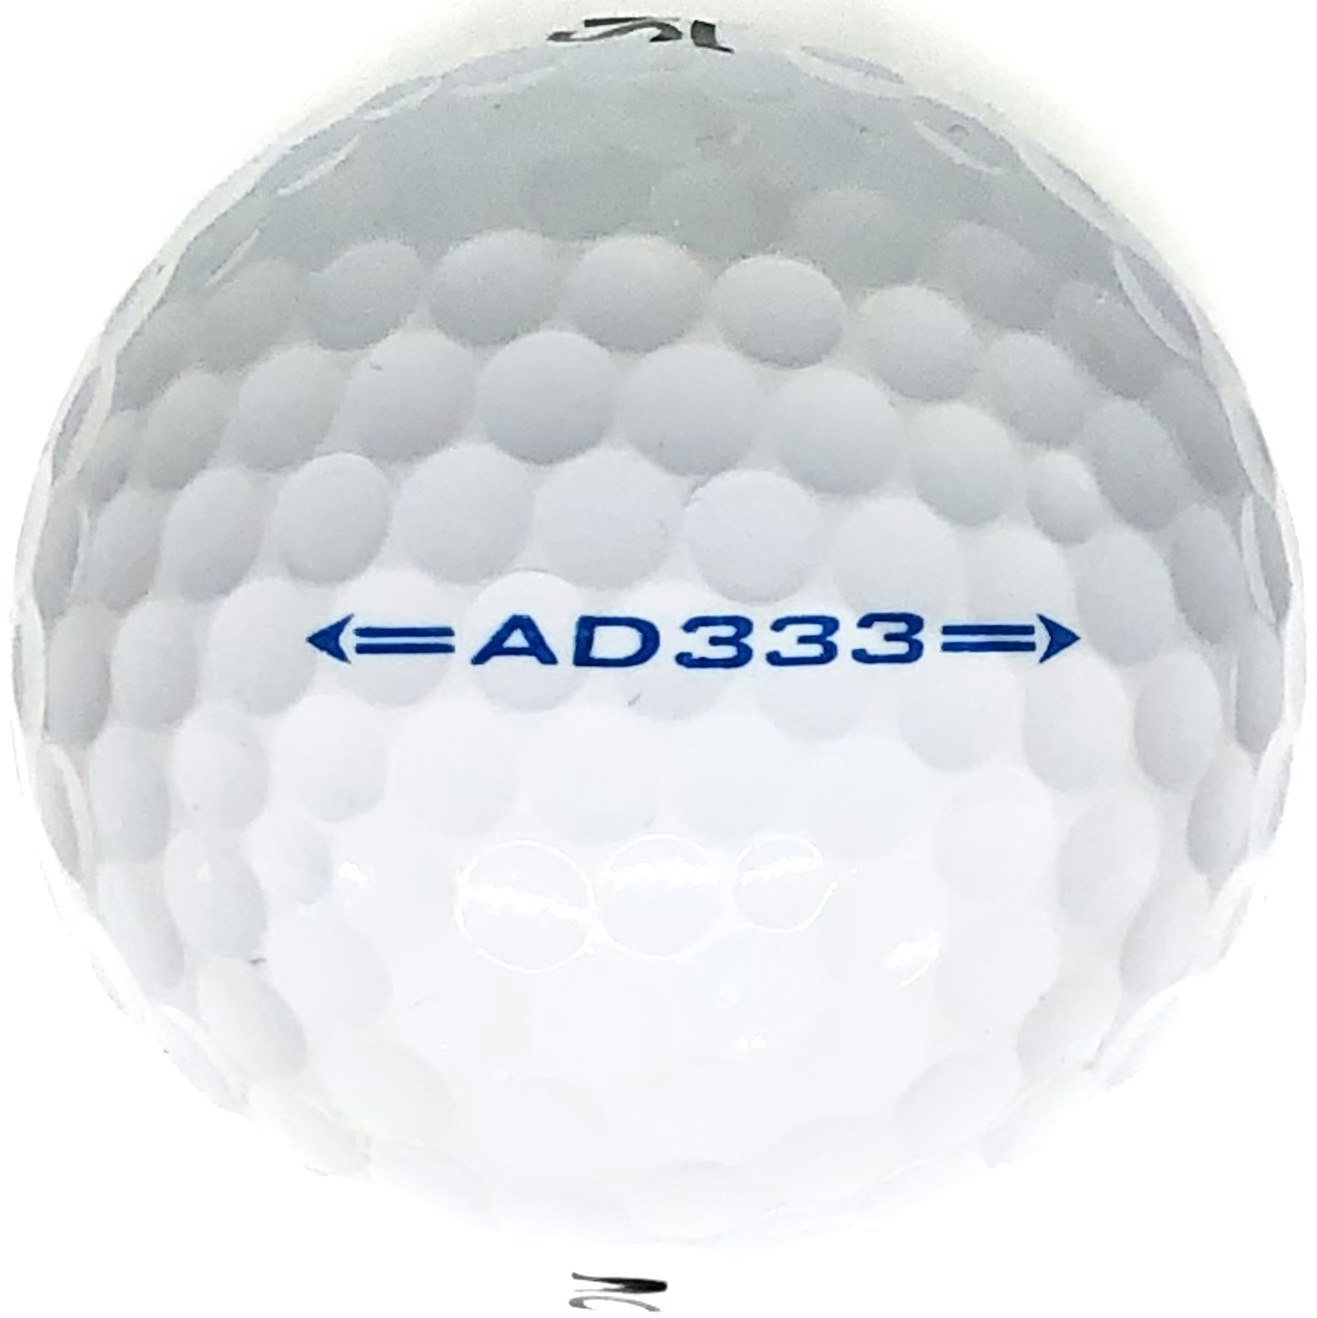 Detta är en vit golfboll, Srixon AD333